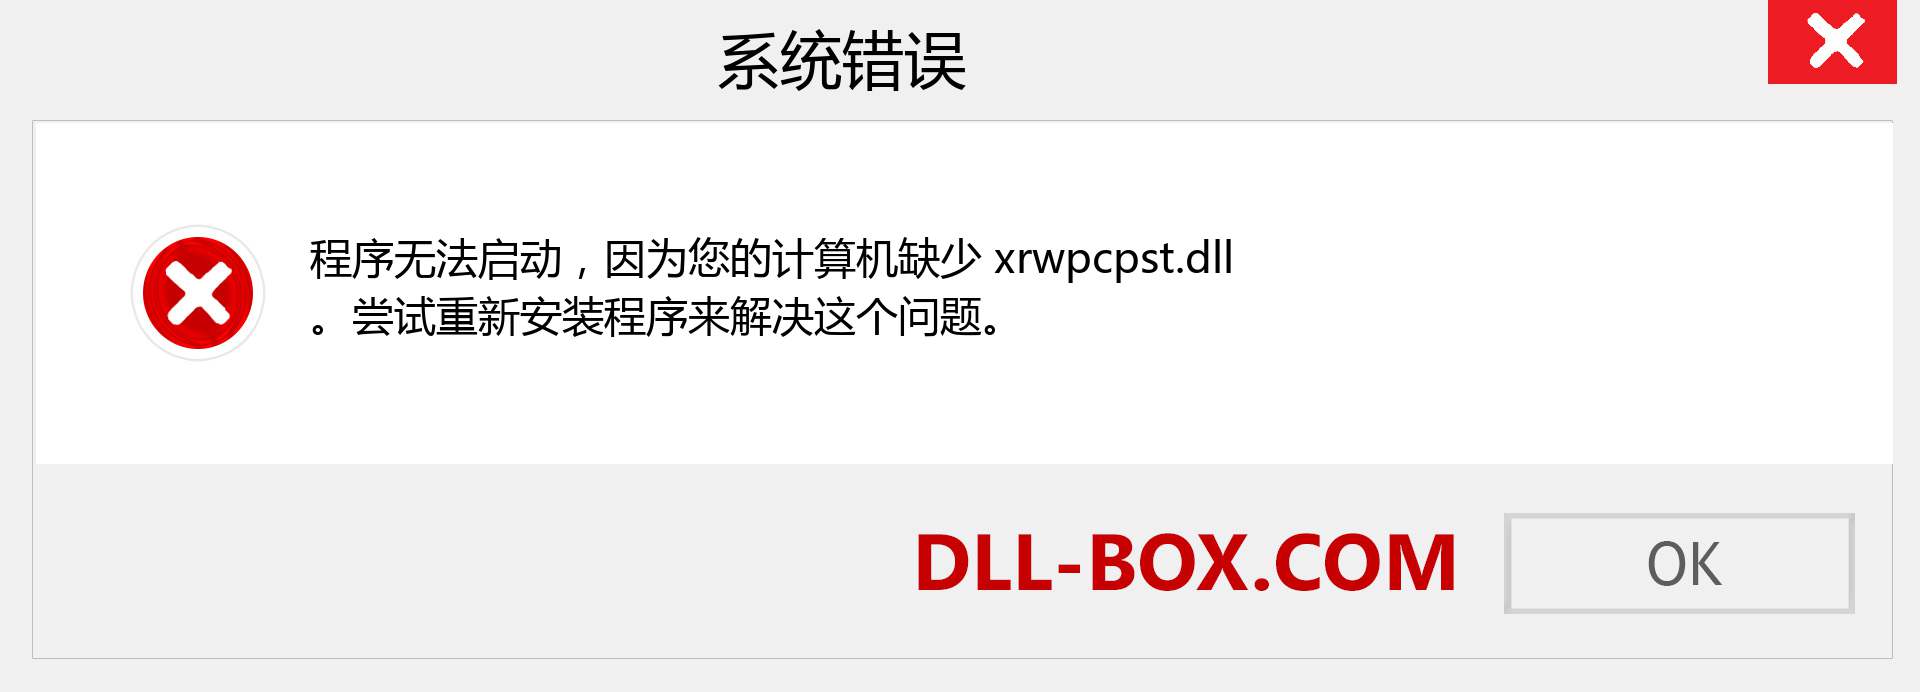 xrwpcpst.dll 文件丢失？。 适用于 Windows 7、8、10 的下载 - 修复 Windows、照片、图像上的 xrwpcpst dll 丢失错误